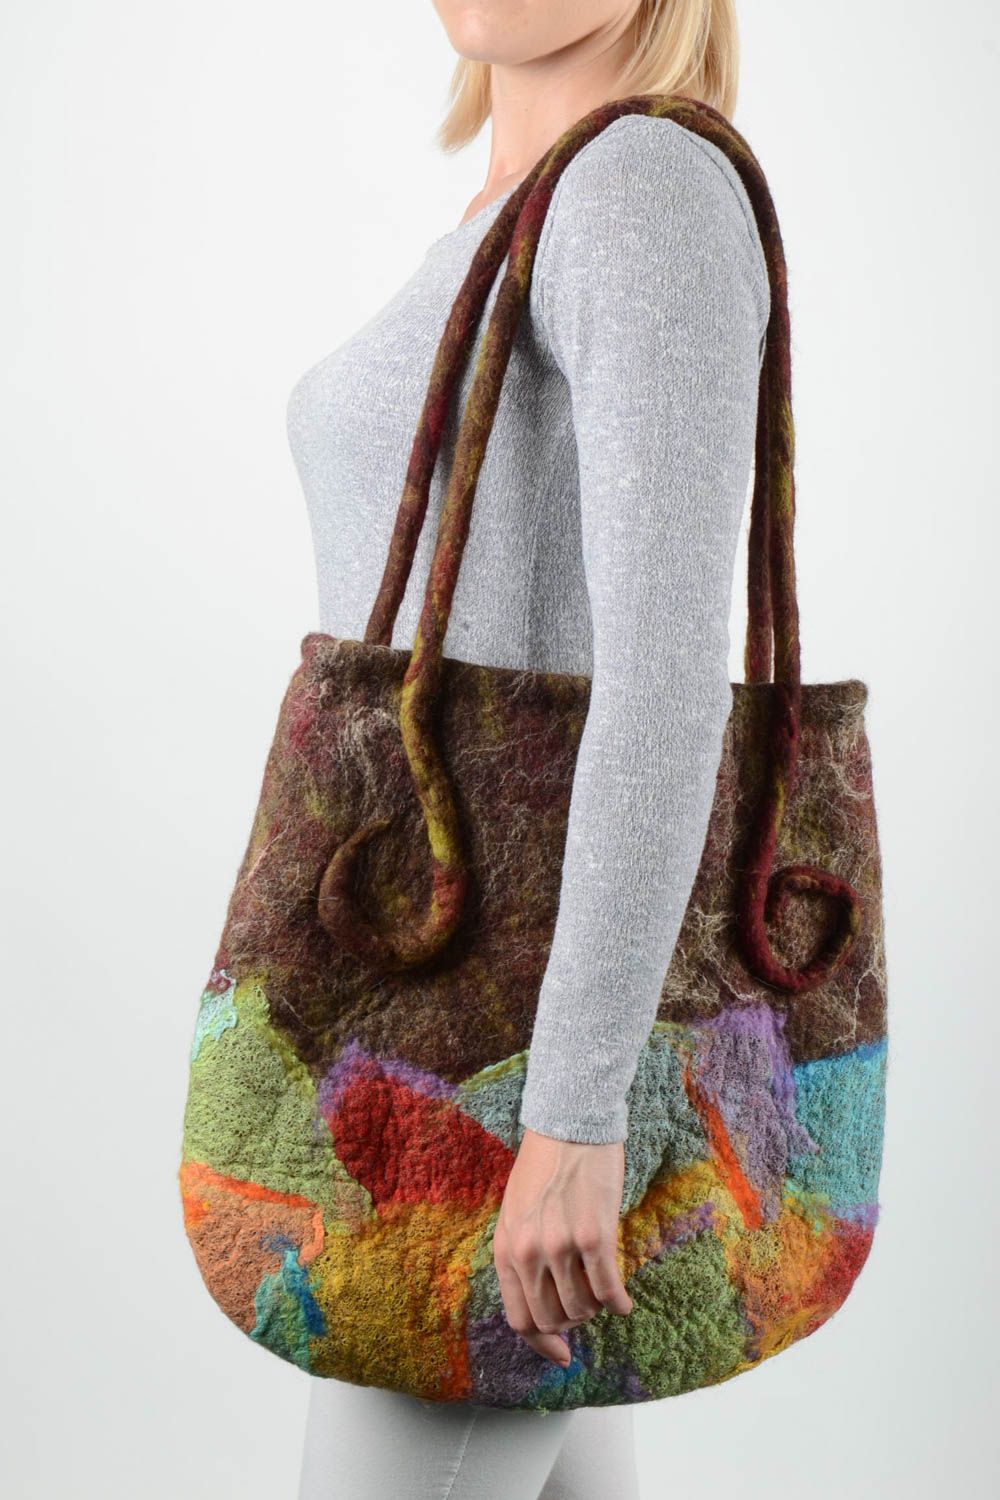 Handmade gefilzte Tasche bunte Stofftasche Damen Accessoire Geschenk für Frau foto 1